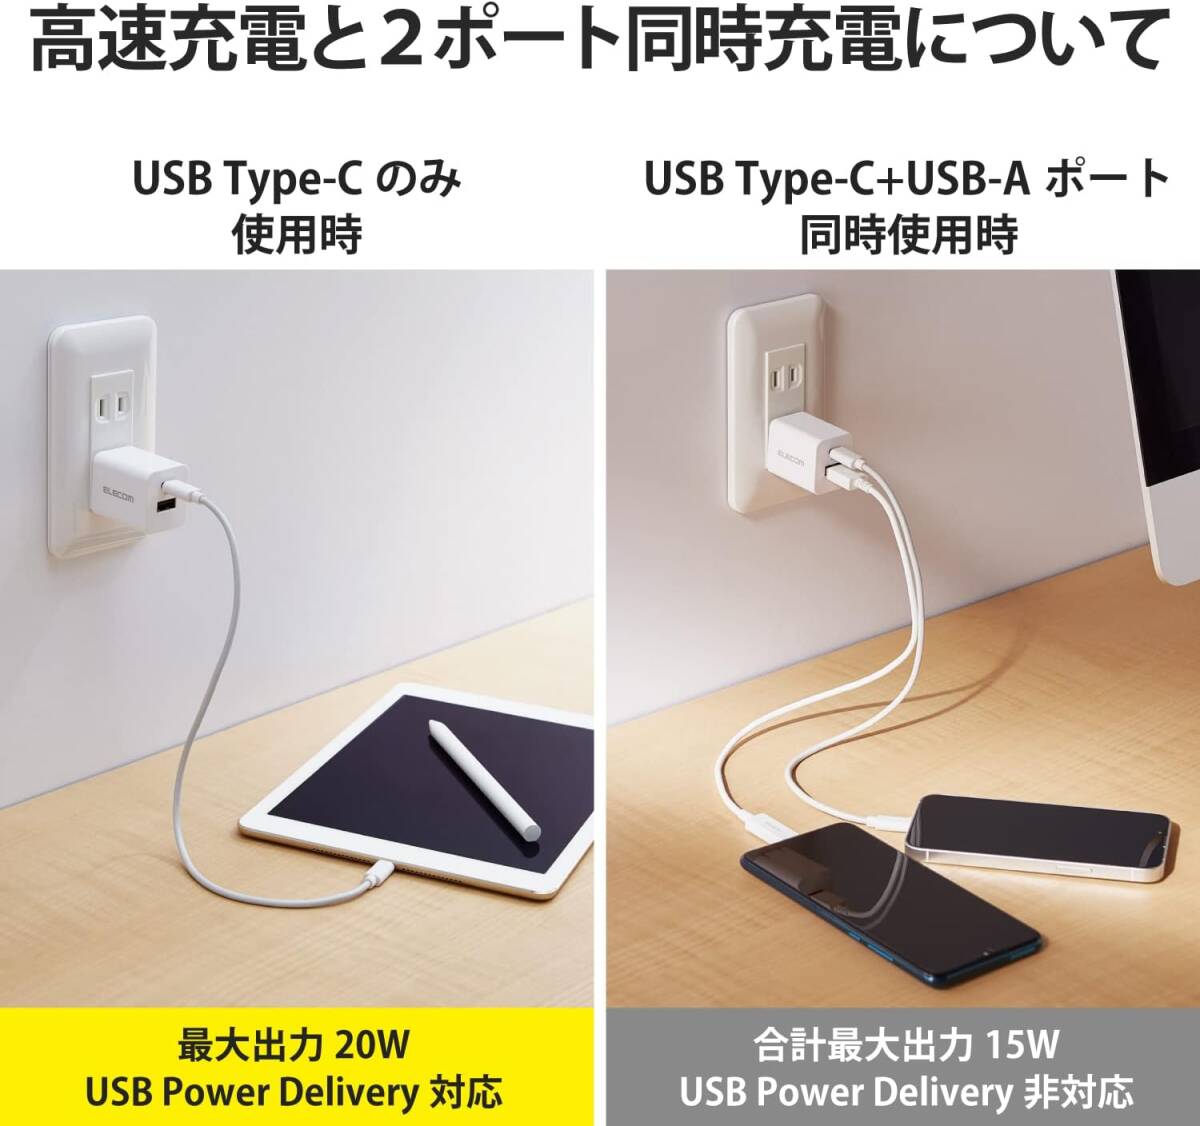 1)充電器単体 エレコム 充電器 2ポート Type-C(USB-C) + USB-A USB PD対応 20W 折りたたみ式プラの画像3